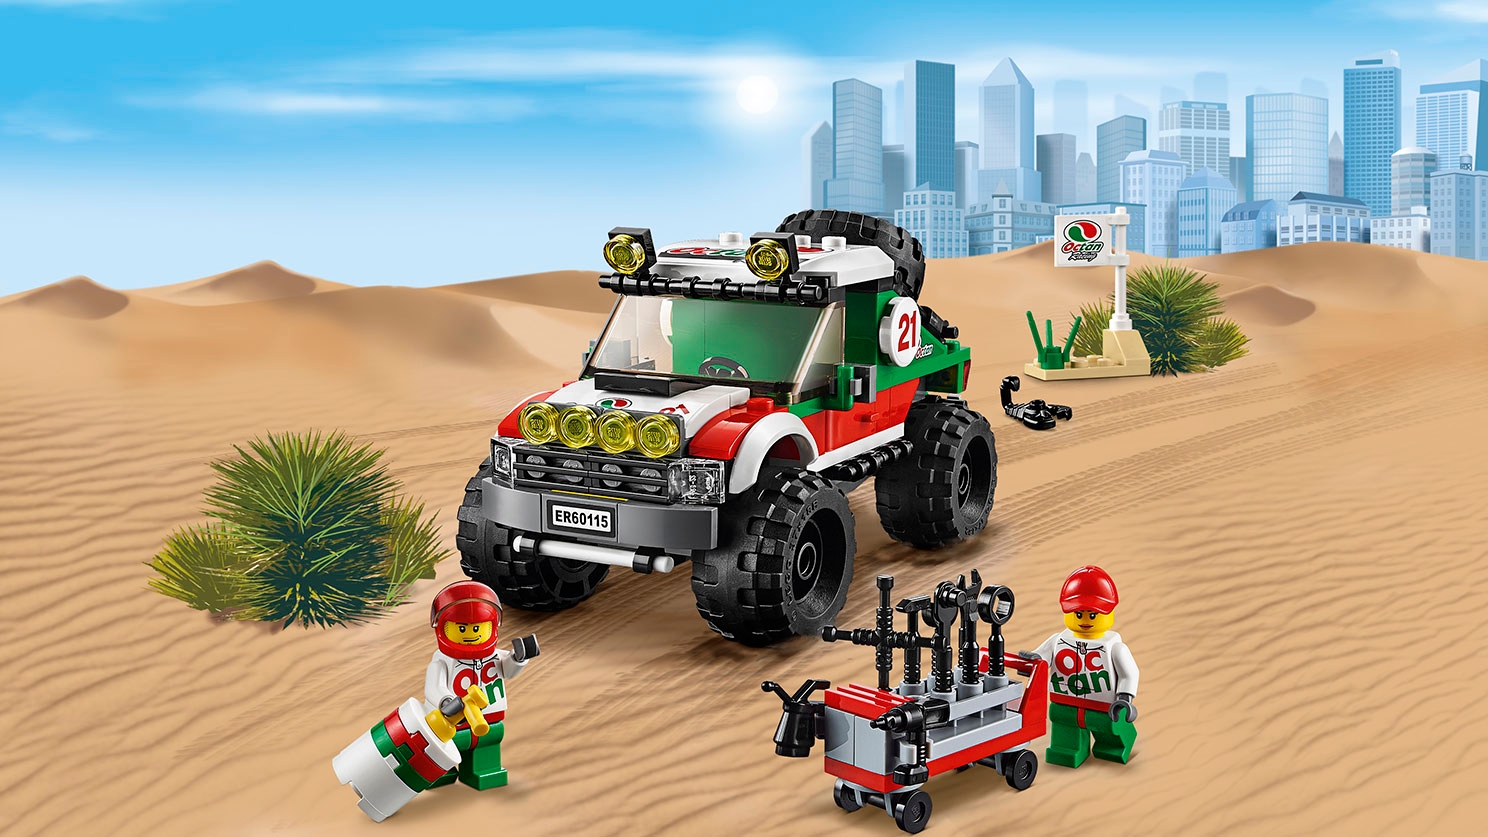 LEGO City Fantastiske fartøjer – offroader med minifigurer af chauffør og mekaniker – Firhjulstrukket offroader 60115